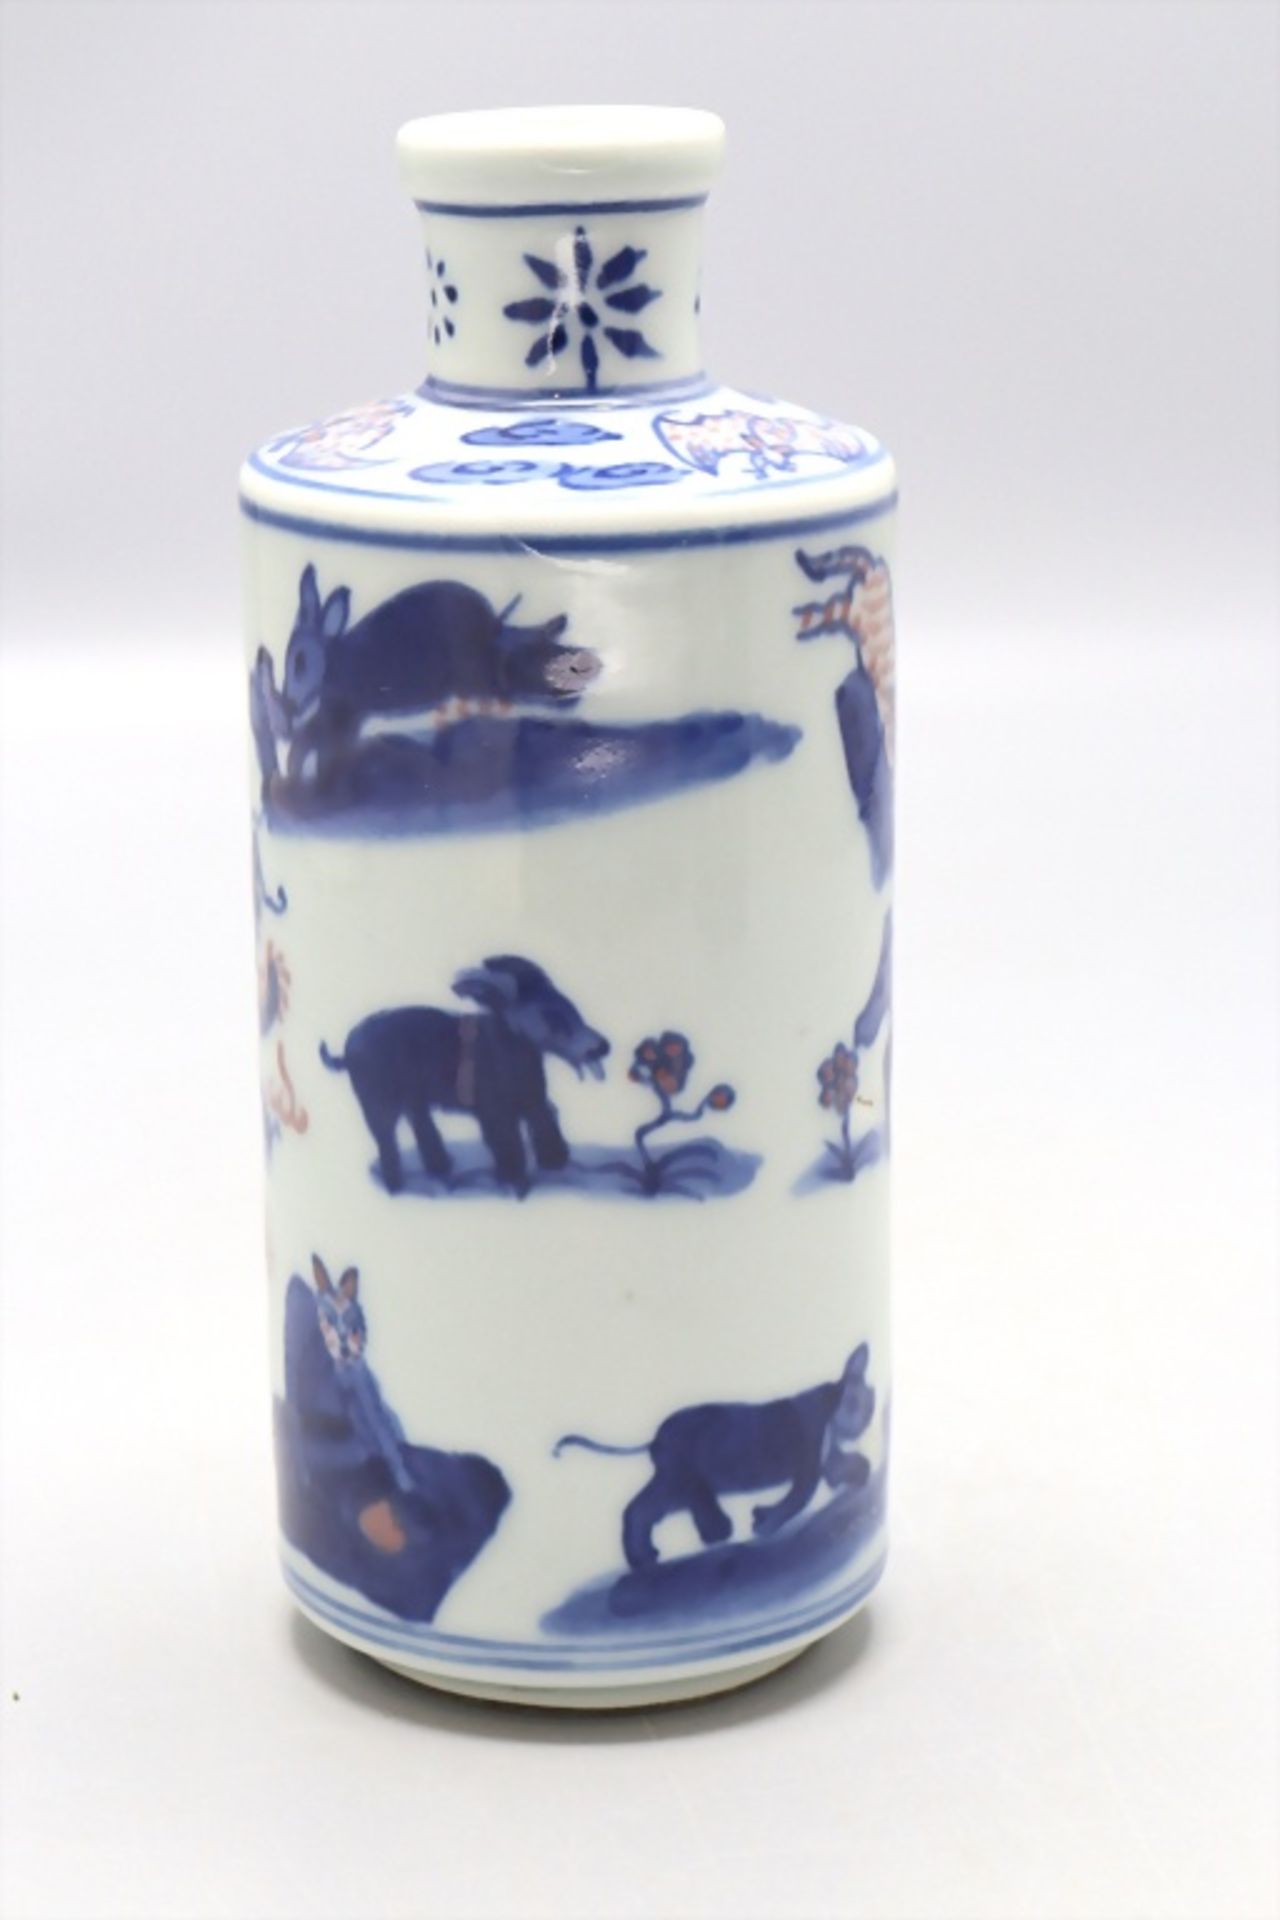 Flaschenvase 'Chinesische Tierkreiszeichen' / A flask vase 'Chinese zodiac signs', China, wohl ... - Image 2 of 5